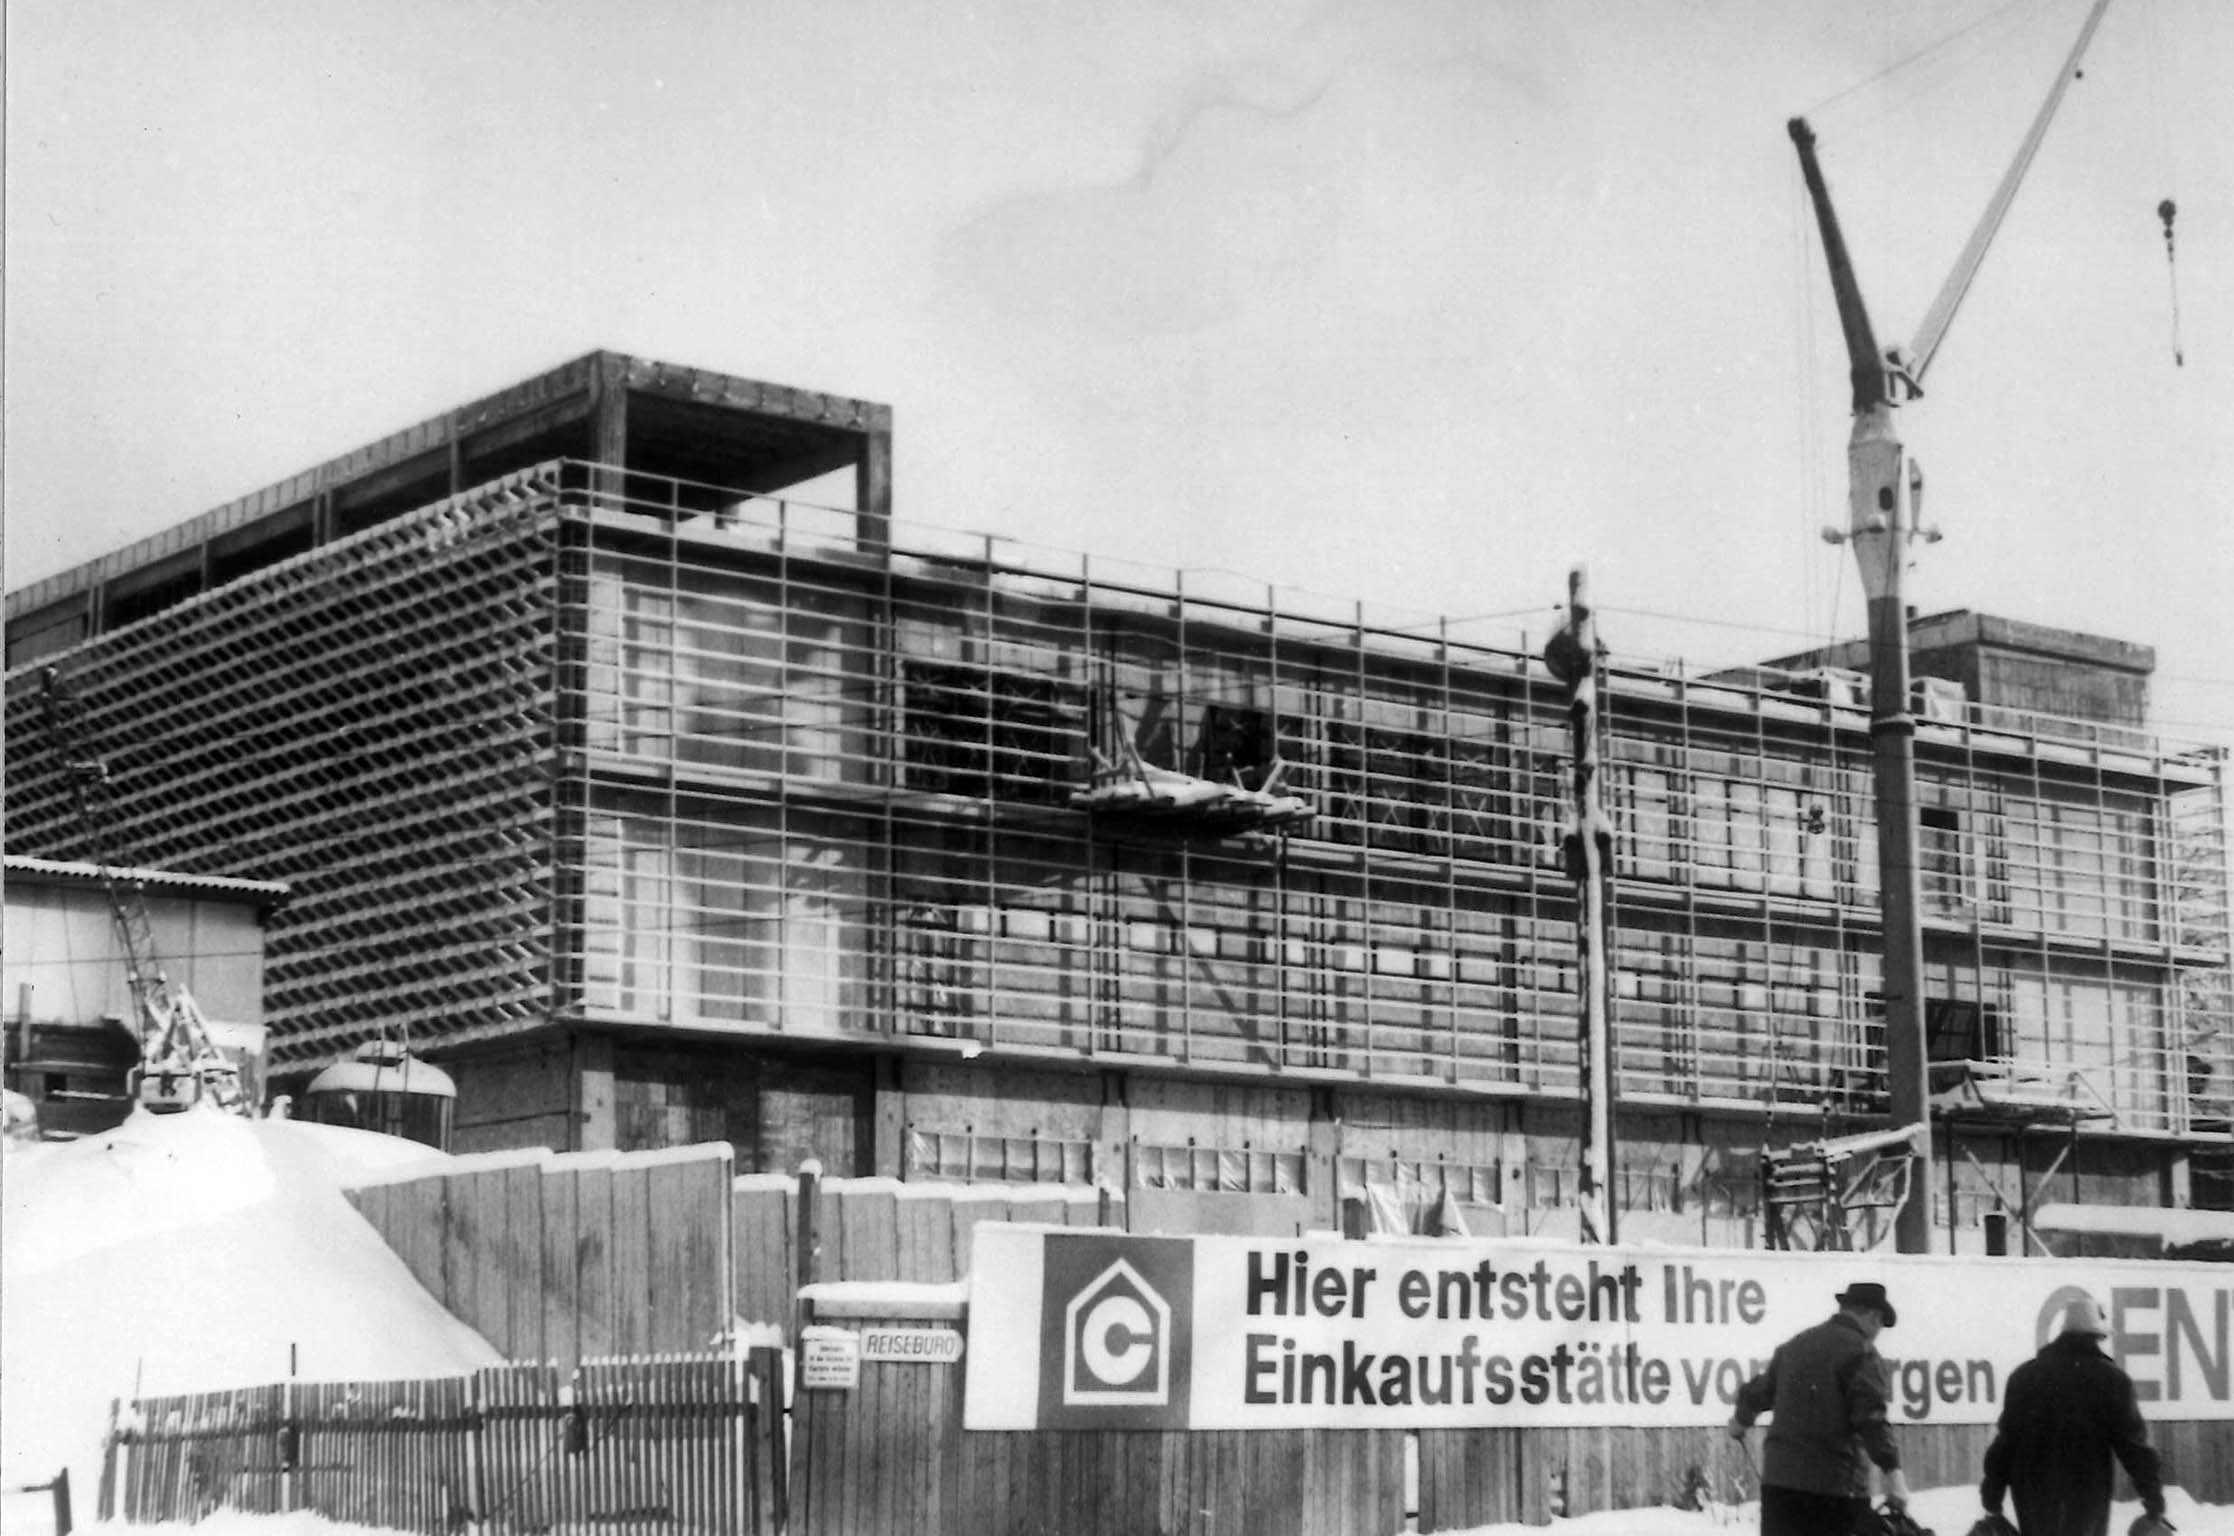 50 Jahre Centrum Warenhaus Suhl